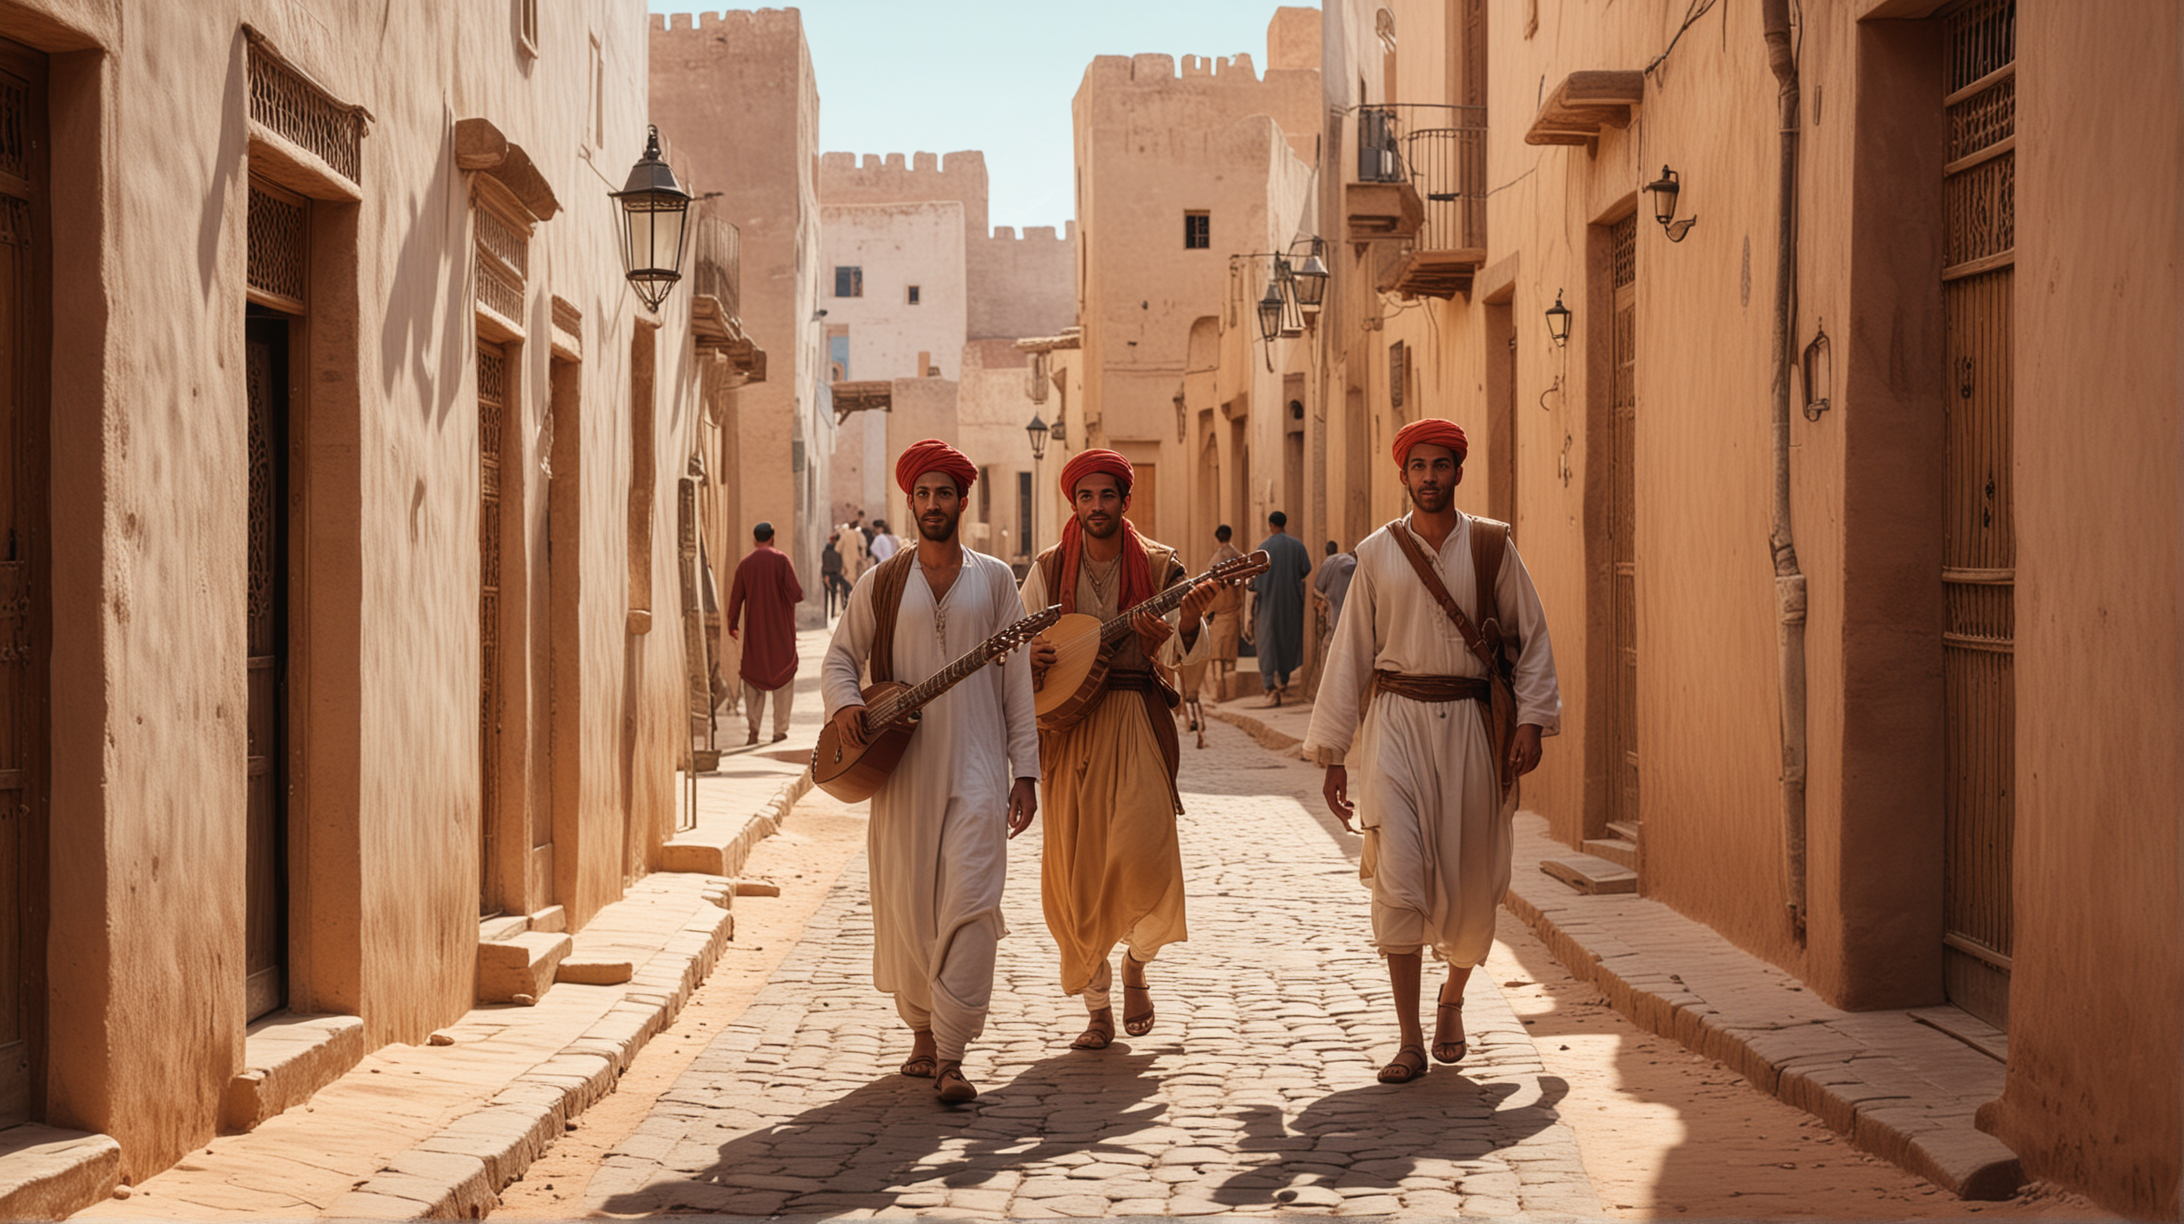 Moroccan Traditional Musician Strumming Lute in Vibrant Village Scene